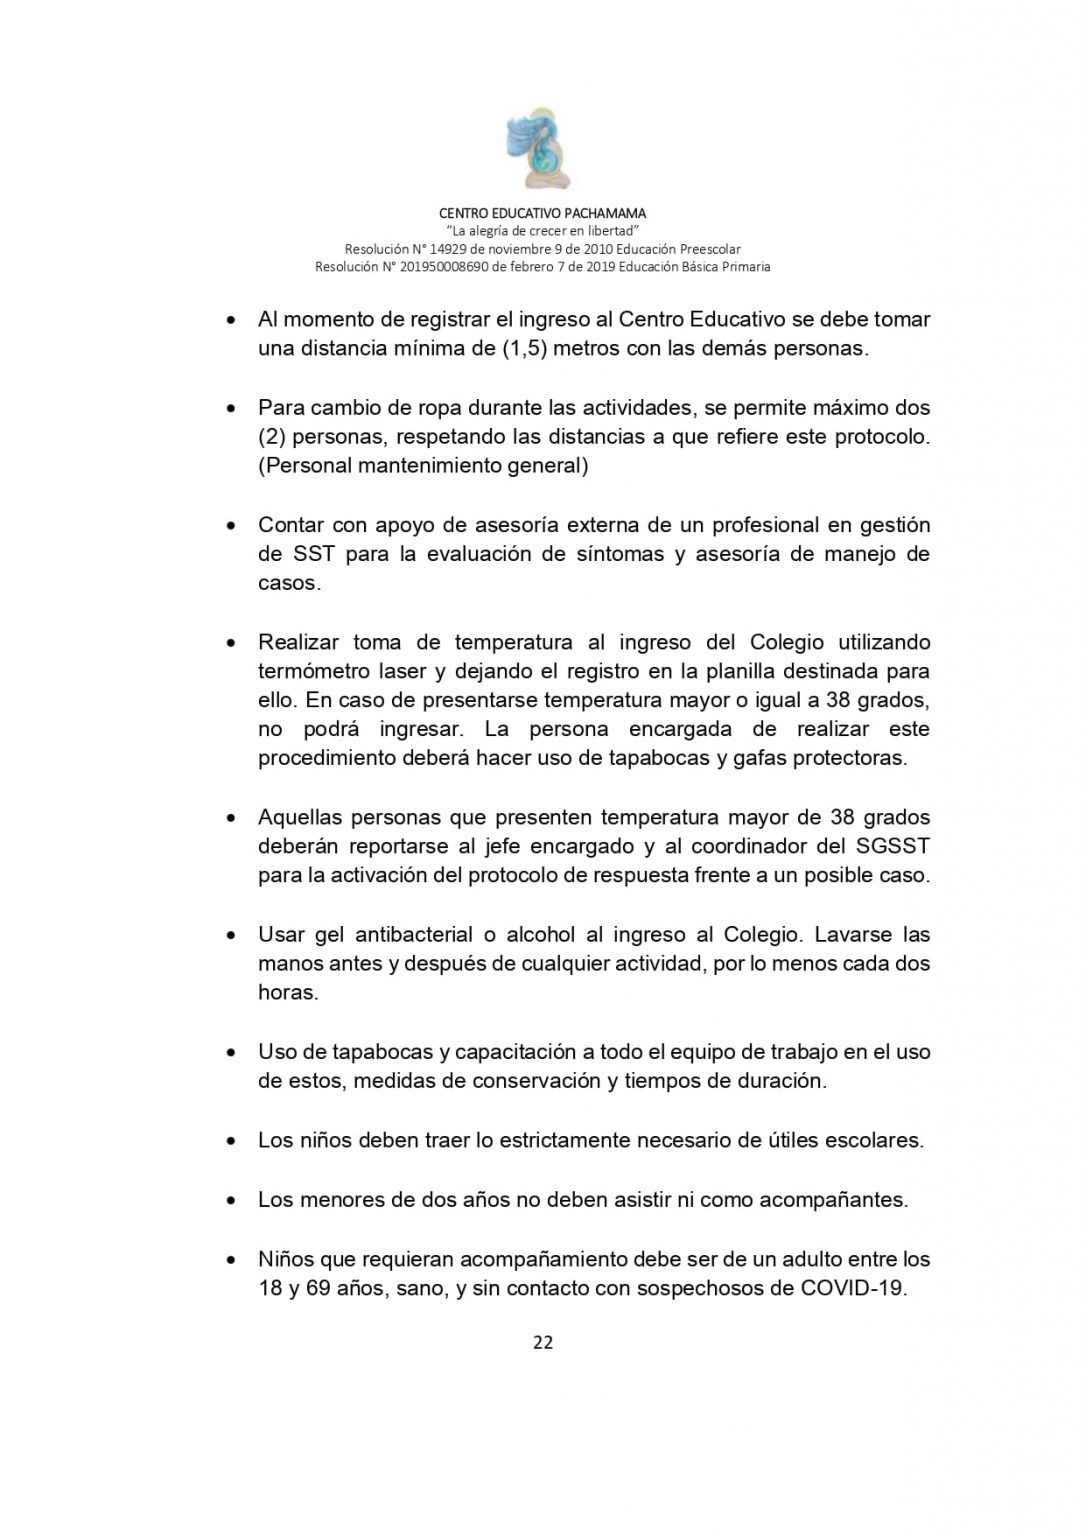 PROTOCOLO DE BIOSEGURIDAD PACHAMAMA Última Versión (3)-convertido_page-0022